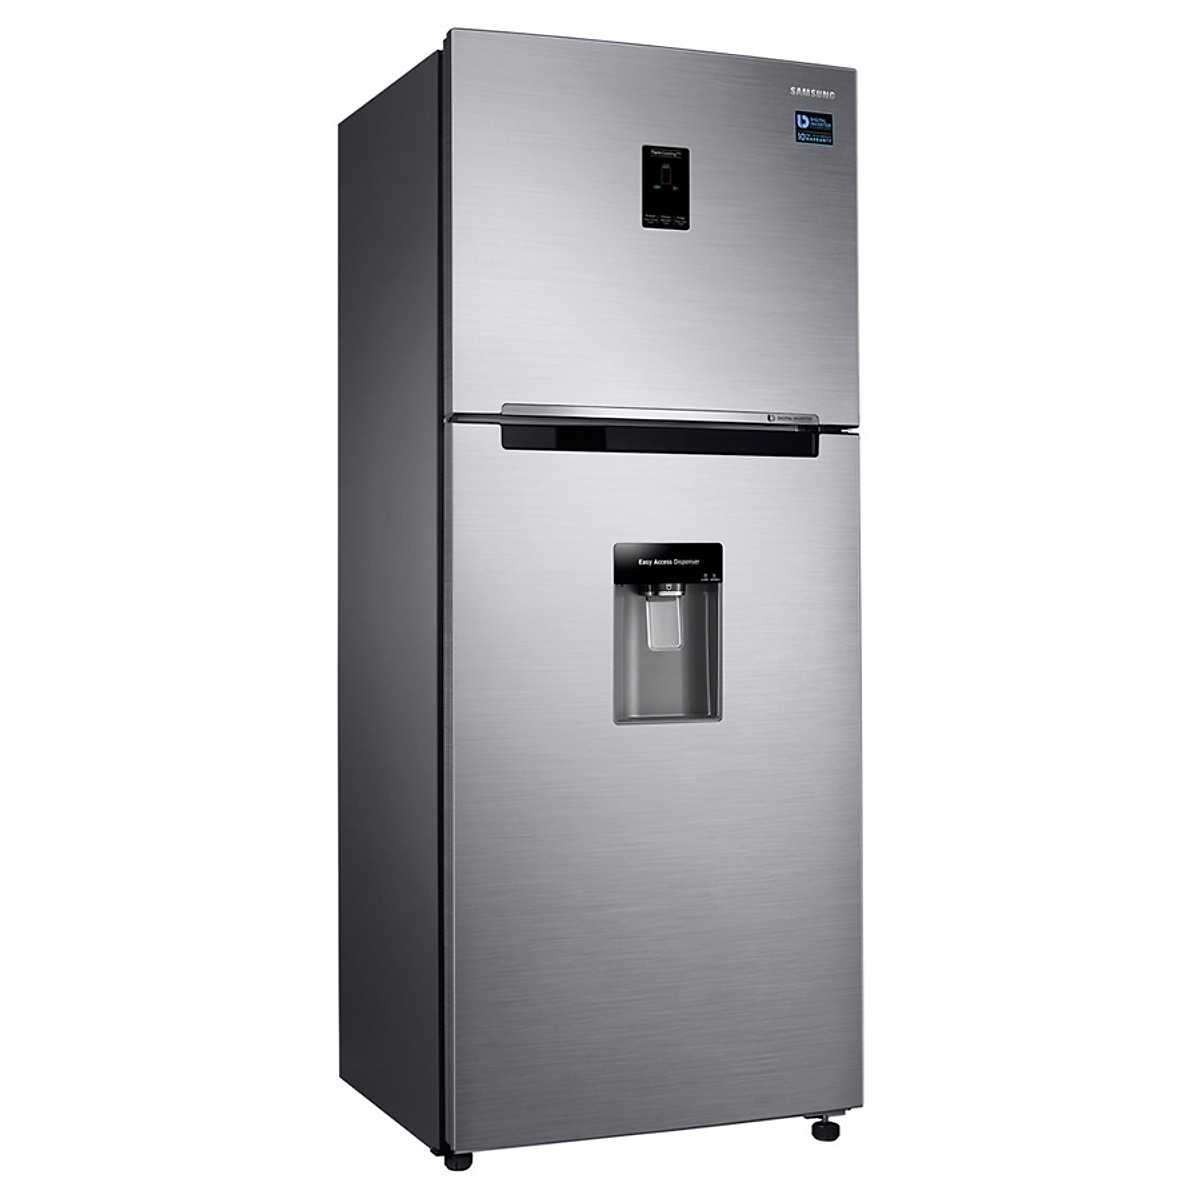 Tủ Lạnh Inverter Samsung Rt35k5982s8/Sv (360l) - Hàng Chính Hãng + Tặng Bình Đun Siêu Tốc